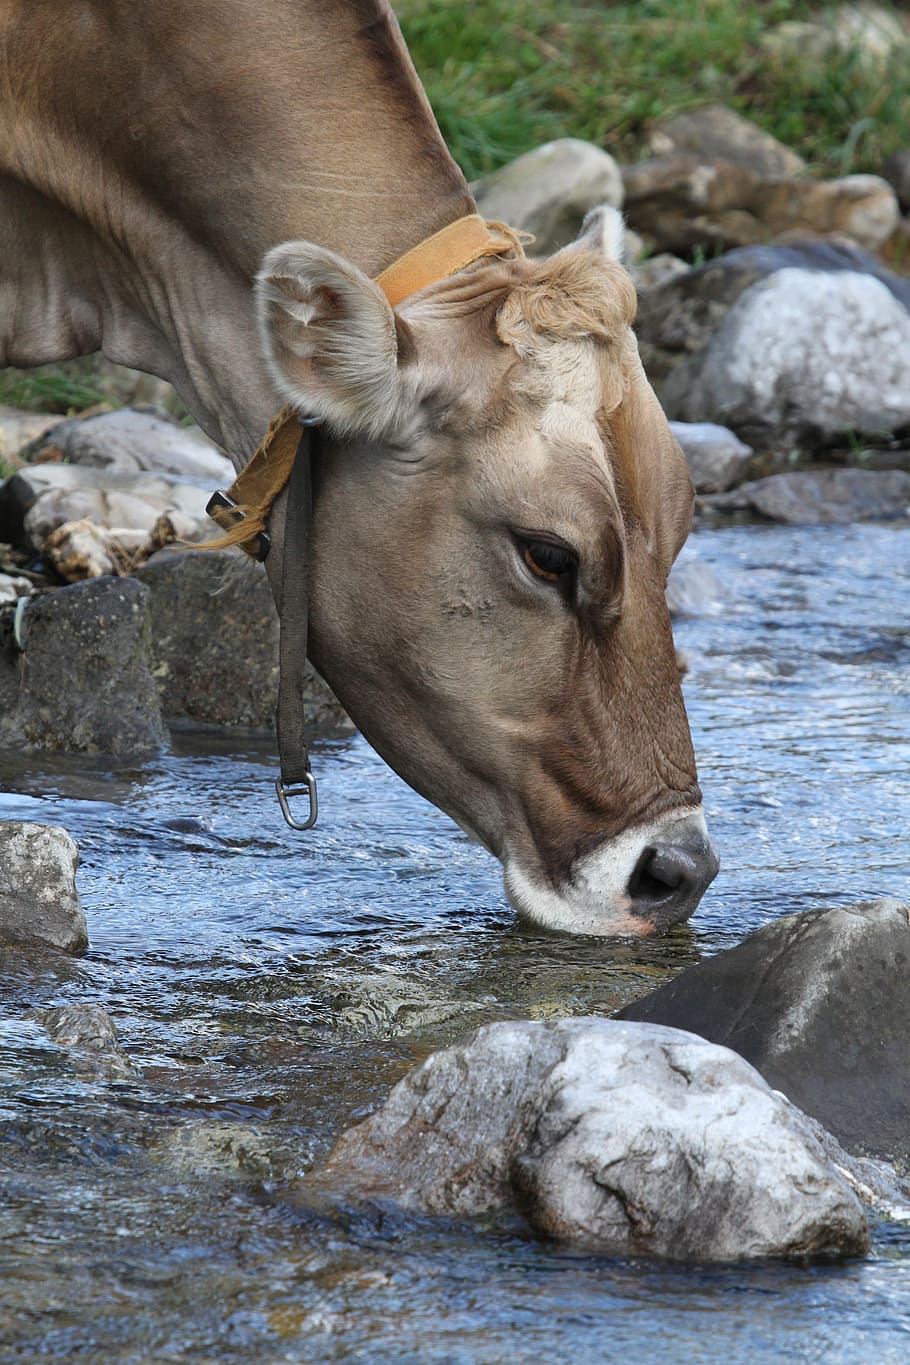 Фото как животные пьют воду